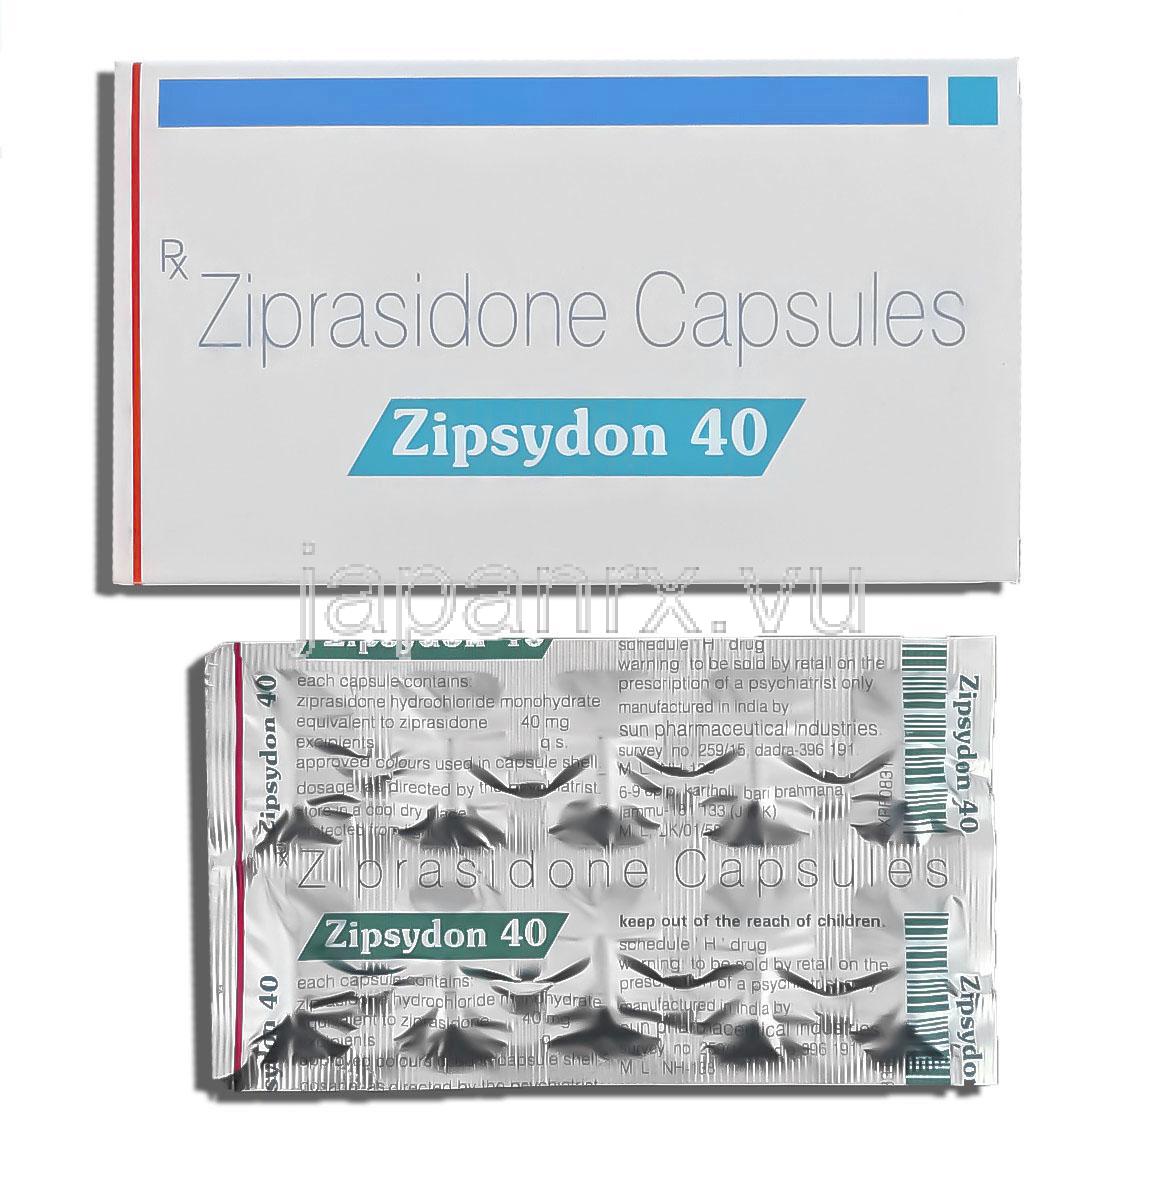 ジプシードン Zipsydon, ジオドンジェネリック, ジプラシドン 40mg カプセル (Sun Pharma)